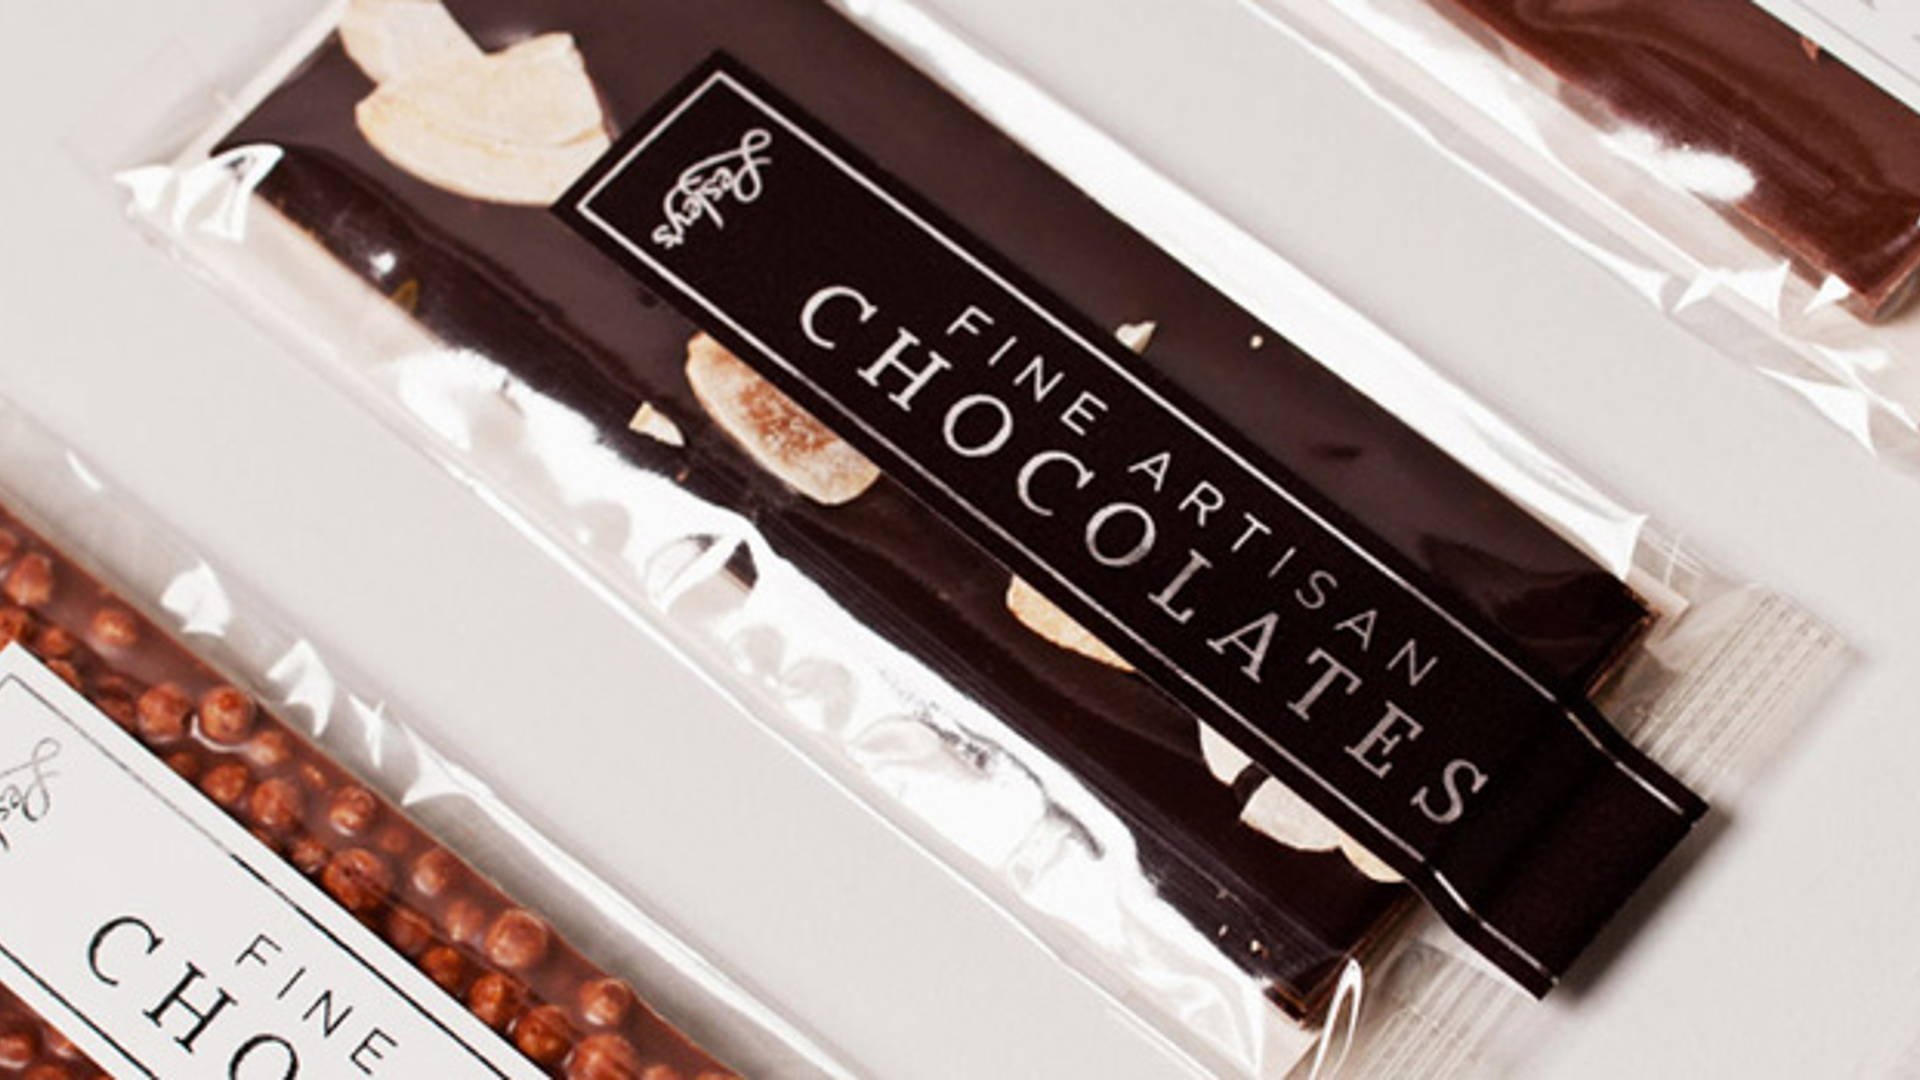 Под шоколад. Шоколадная плитка в прозрачной упаковке. Шоколад в упаковке. Упаковка для шоколадной плитки. Шоколад в прозрачной упаковке.